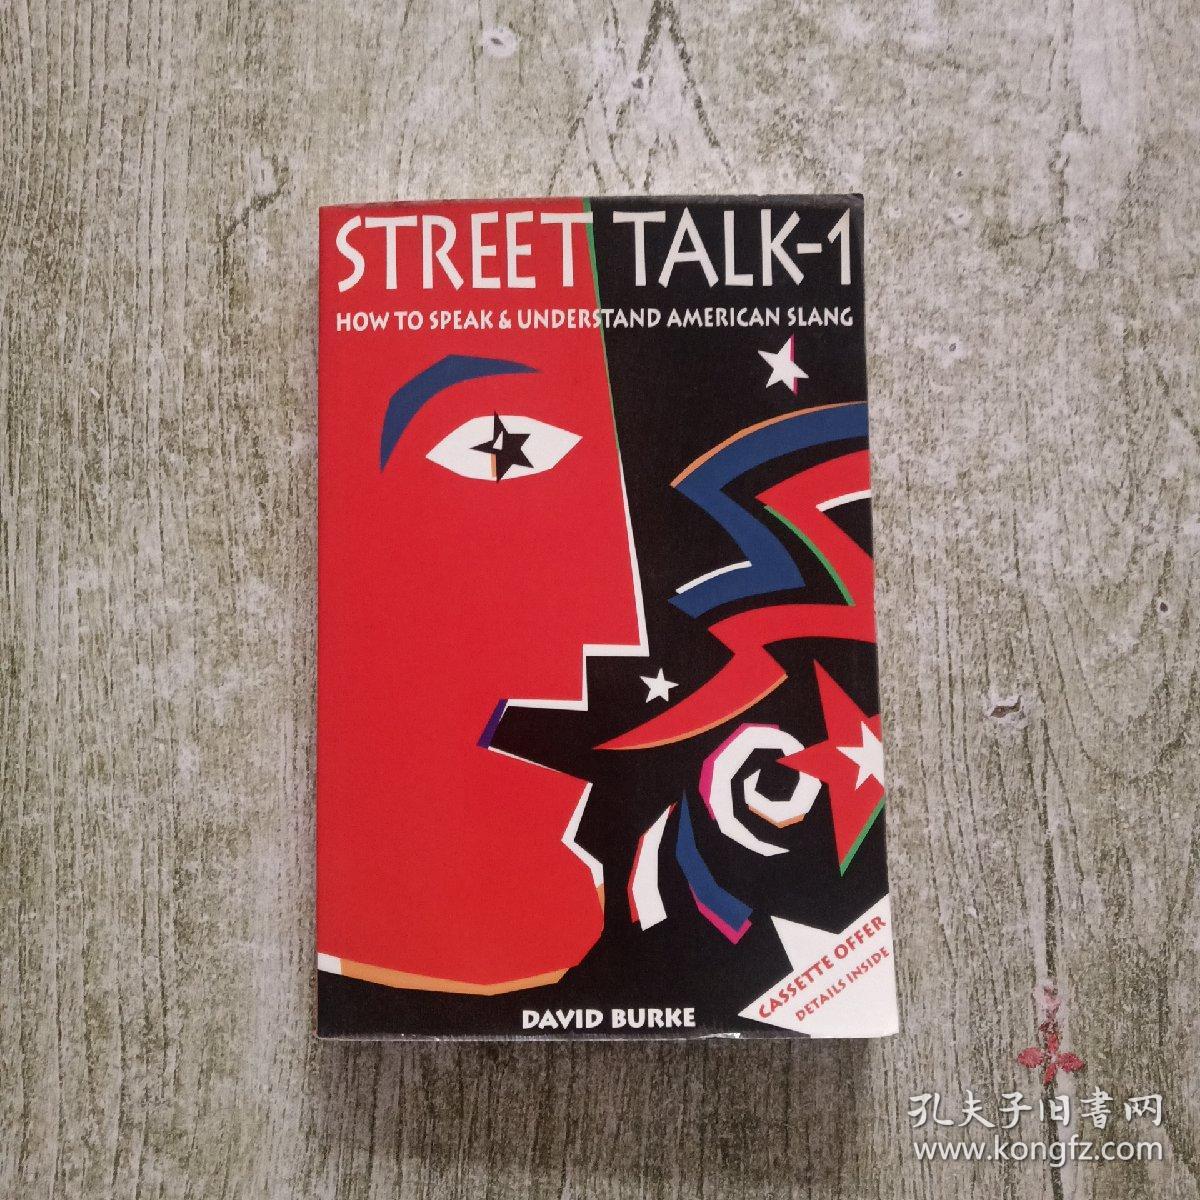 STREET TALK-1